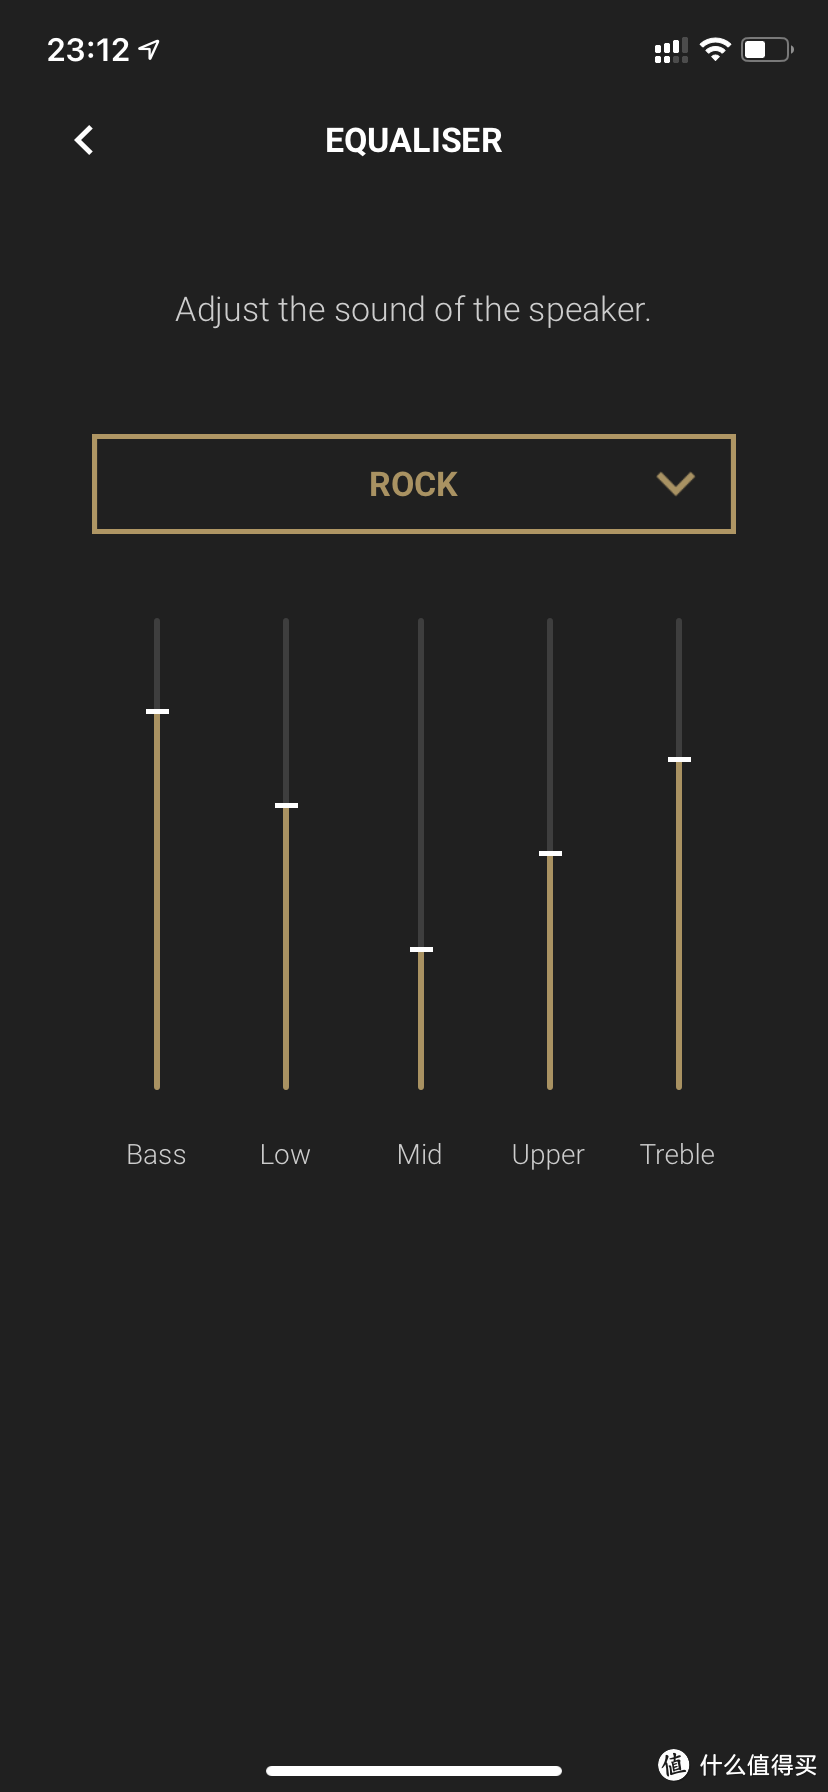 均衡器选项，可以调节五个频段，作为一名摇滚乐迷肯定那得选Rock啦～